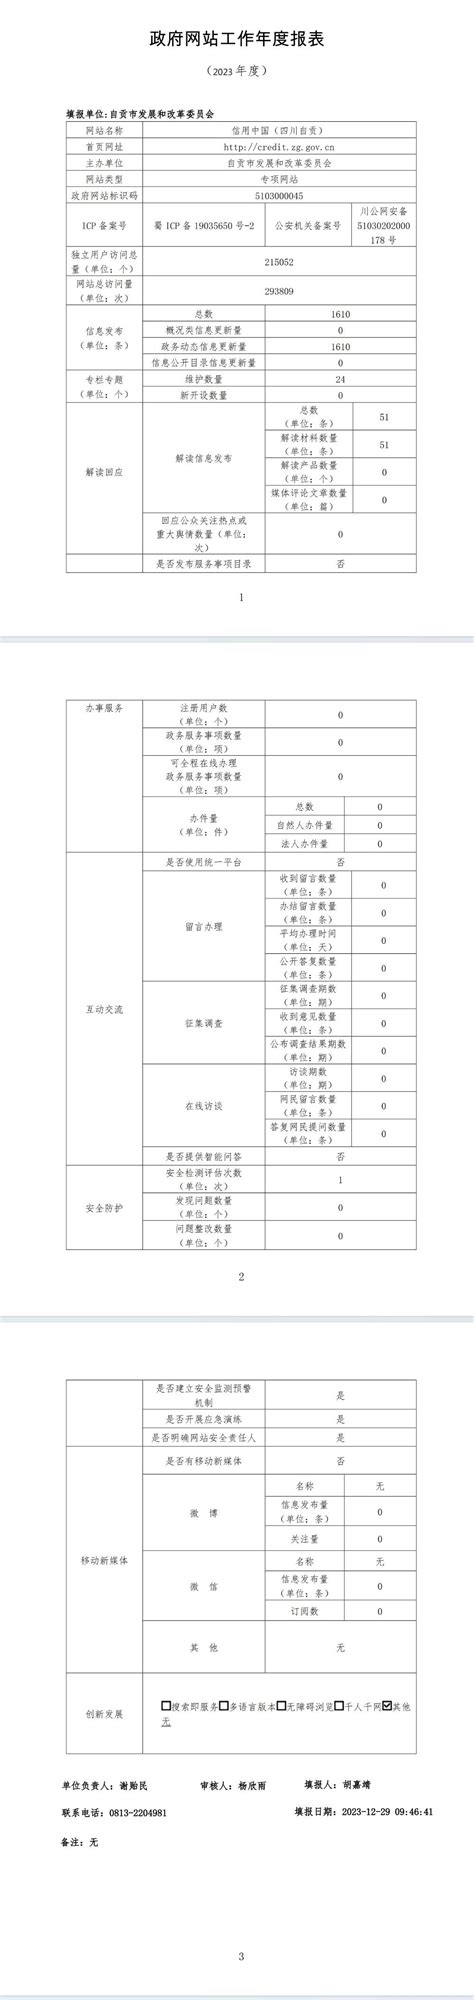 云贡电商 - 核心服务 - 上海吉贡企业管理有限公司